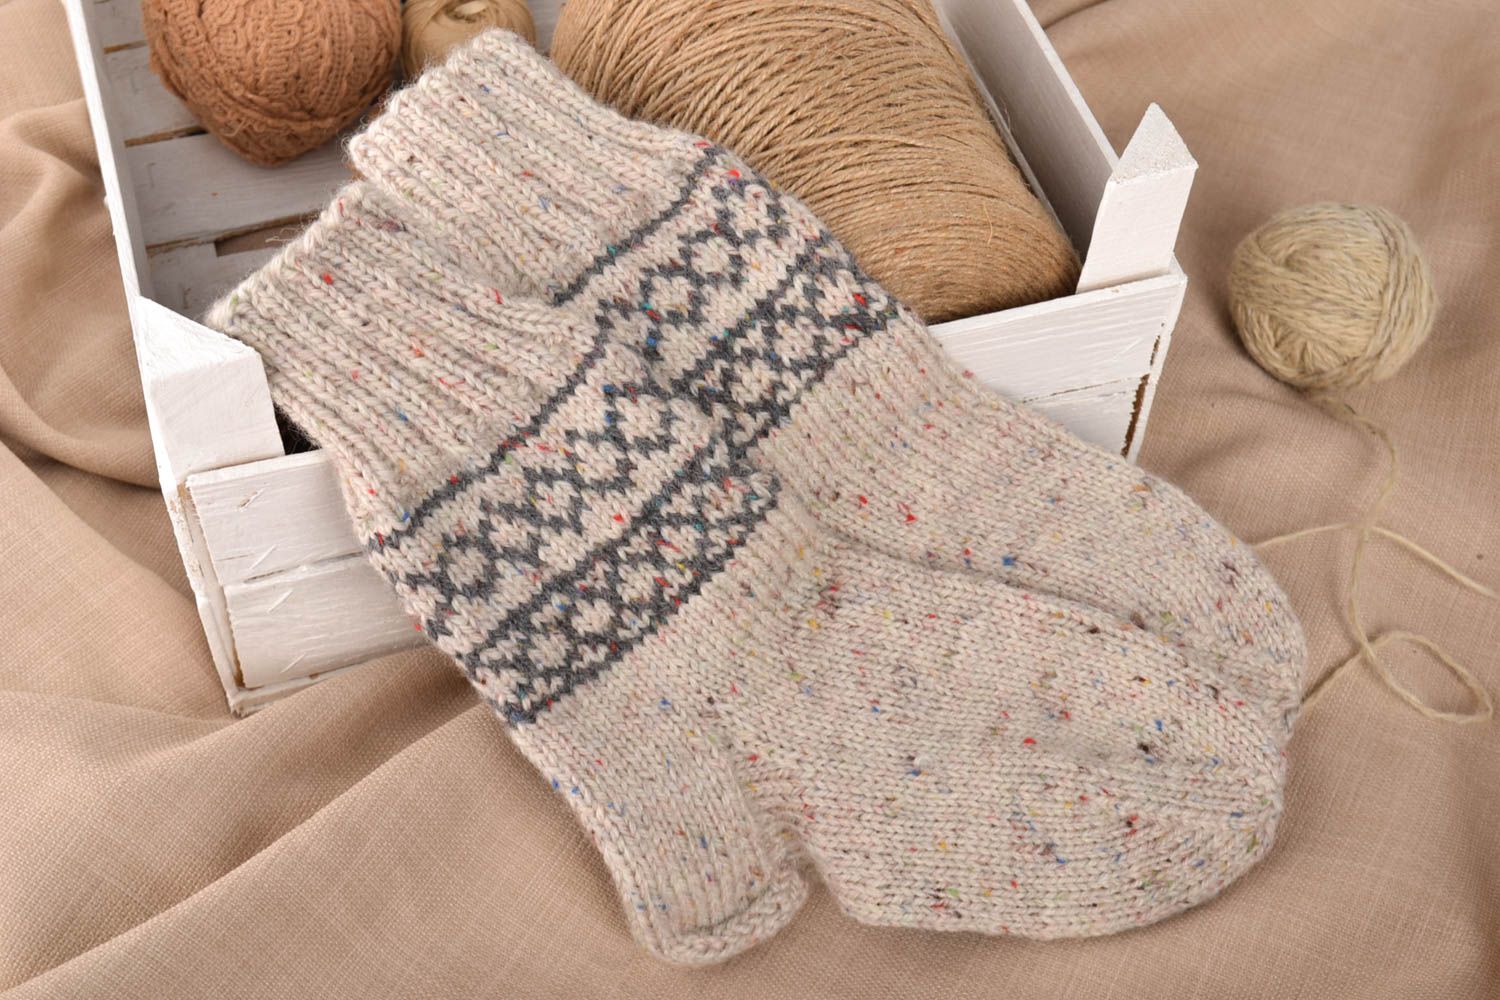 Handmade wool socks knitted socks warm woolen socks best gifts for men photo 1